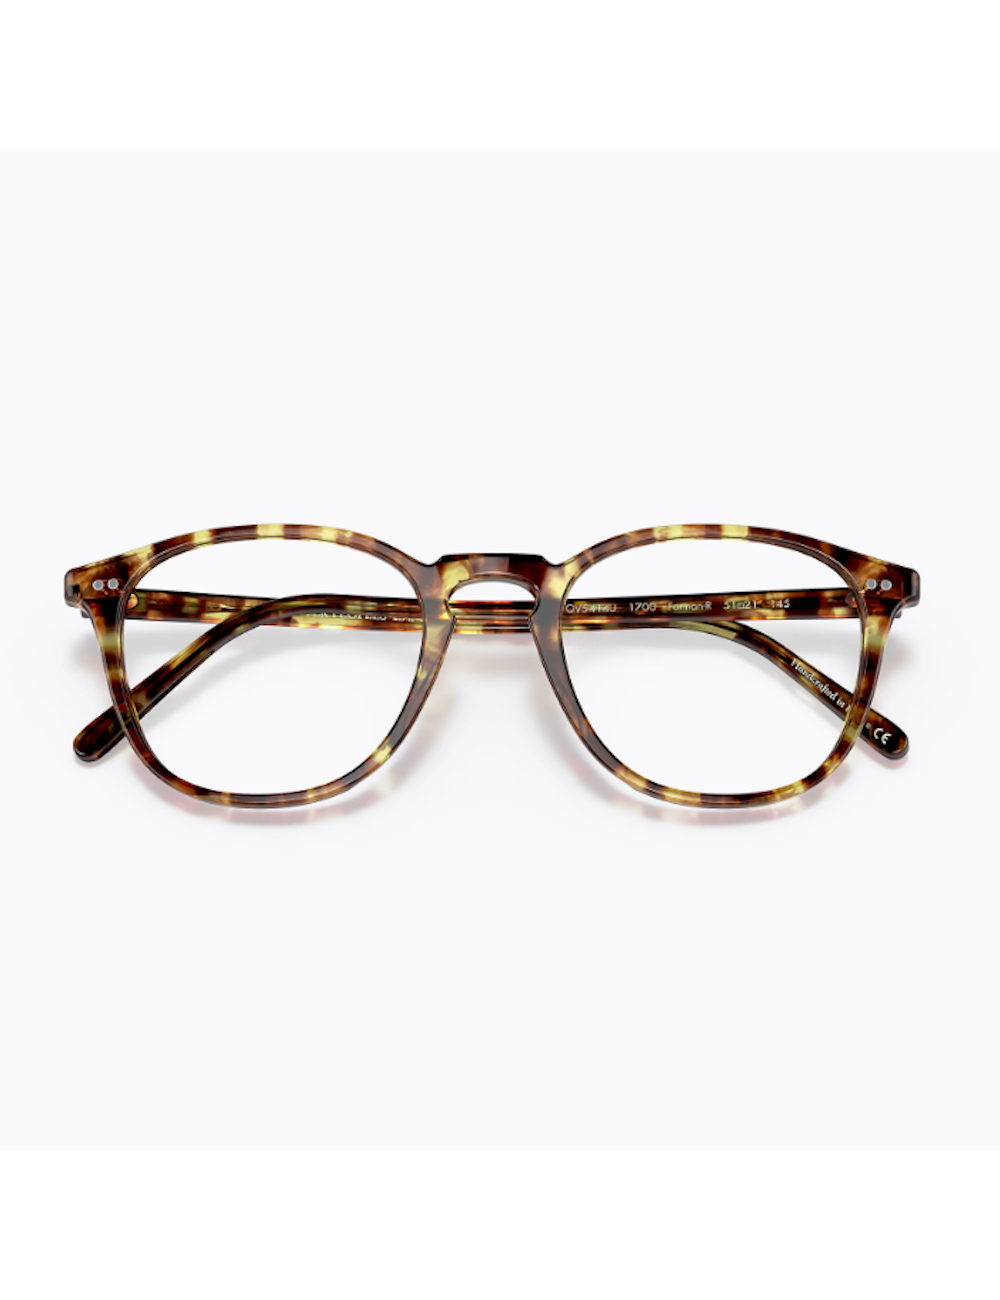 Oliver Peoples OV5414U 1700 round eyeglasses for men – 